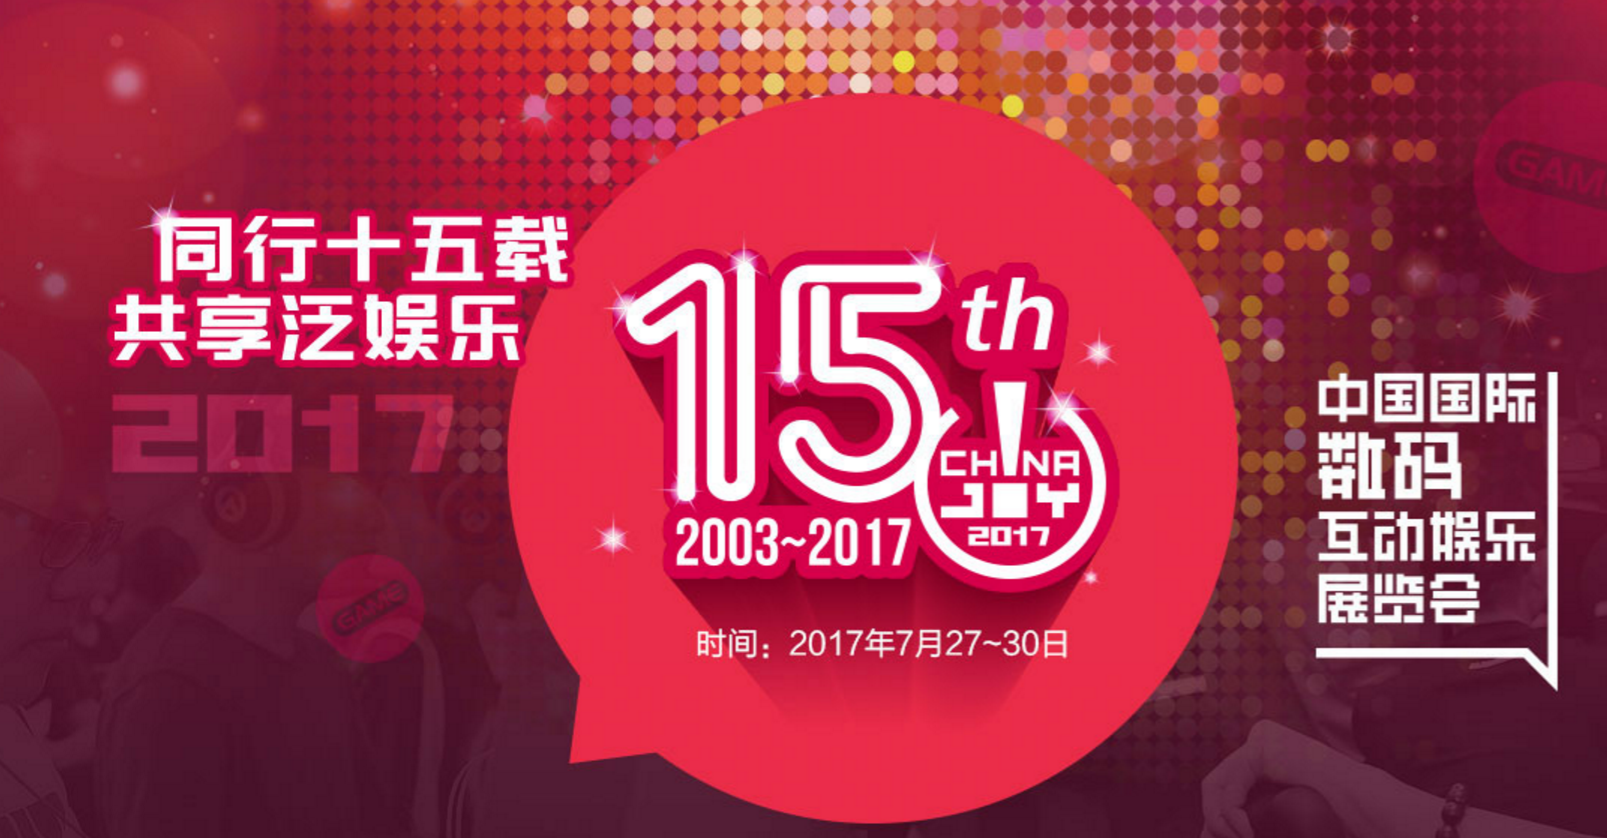 2017中國國際數碼互動娛樂展覽會